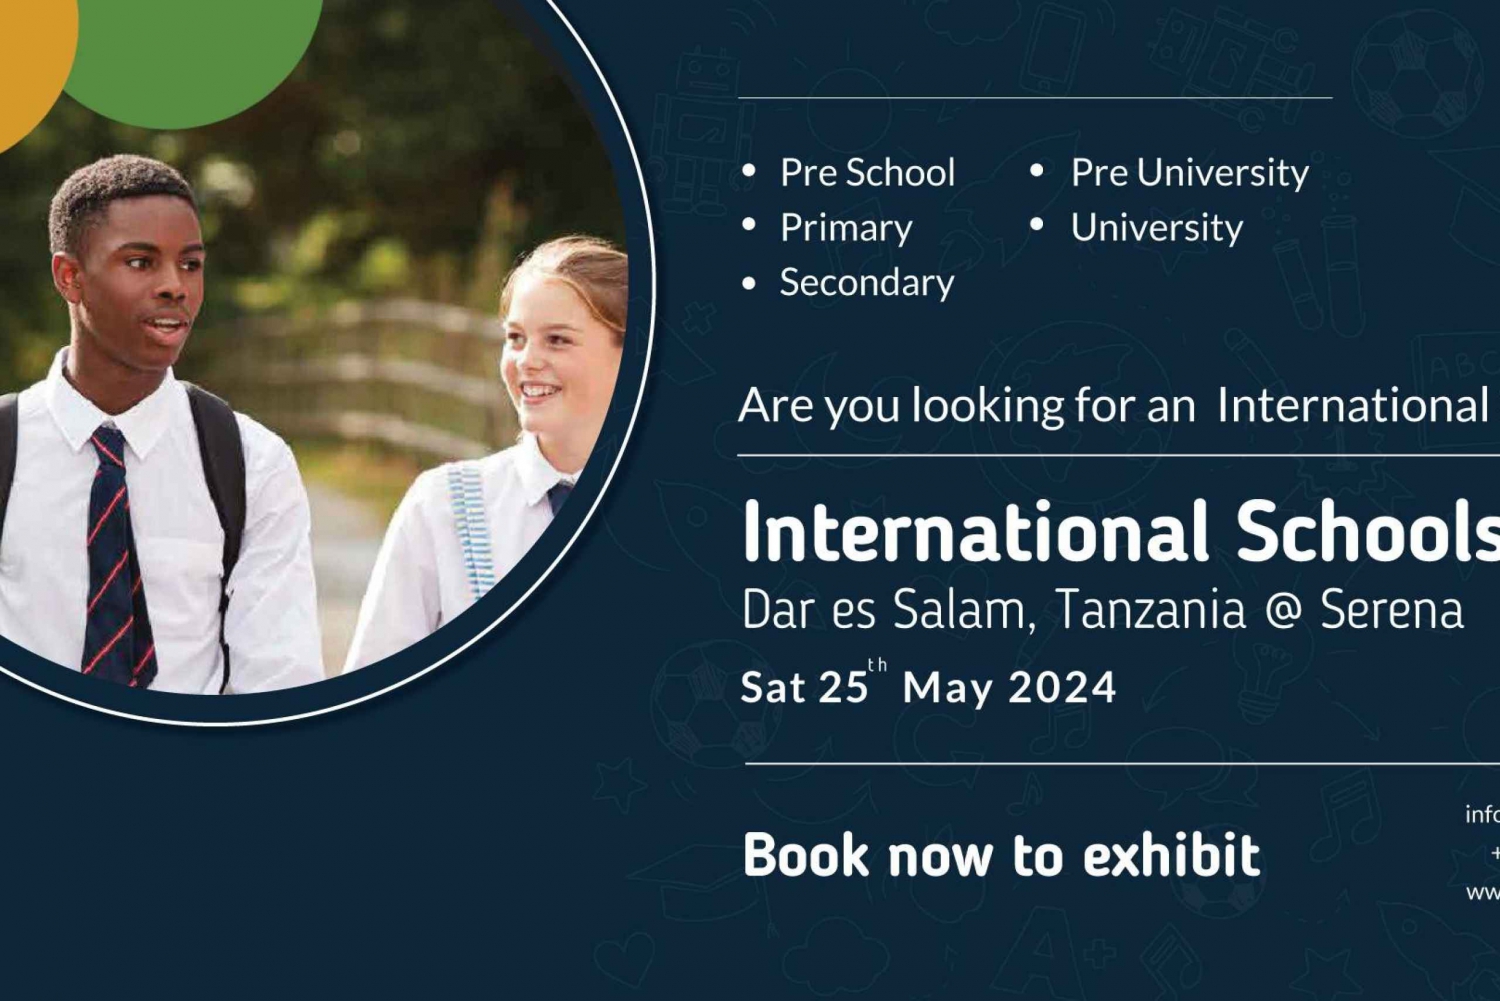 Dar es Salaam:Feria Internacional de Educación Escolar